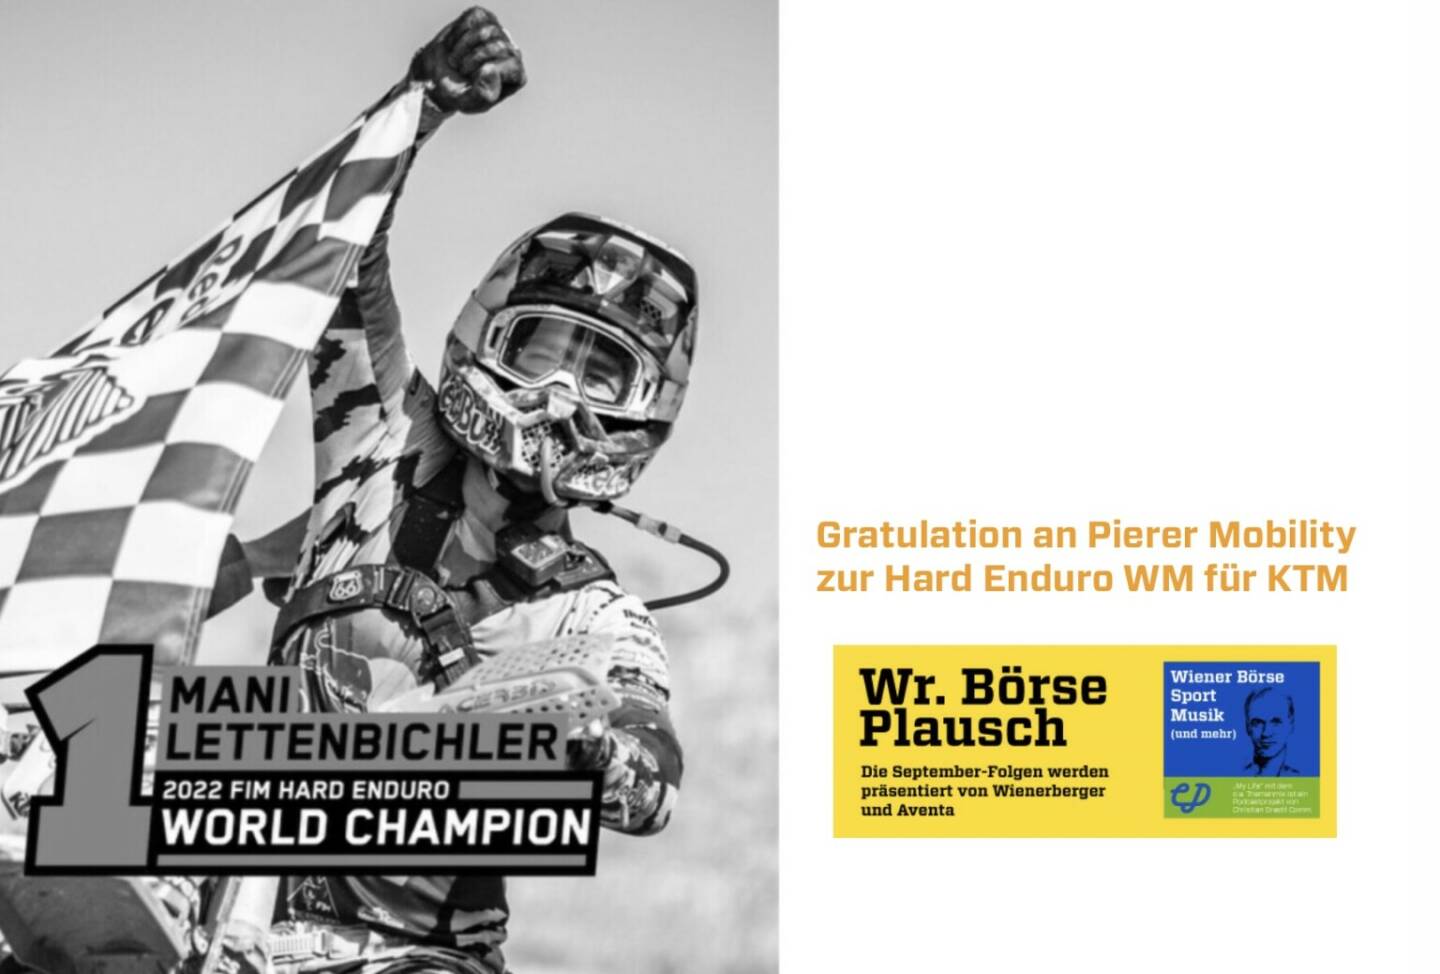 Gratulation an Pierer Mobility zur Hard Enduro WM für KTM. Dies und mehr in Folge S3/22 der Wiener Börse Pläusche im Rahmen von http://www.christian-drastil.com/podcast . 